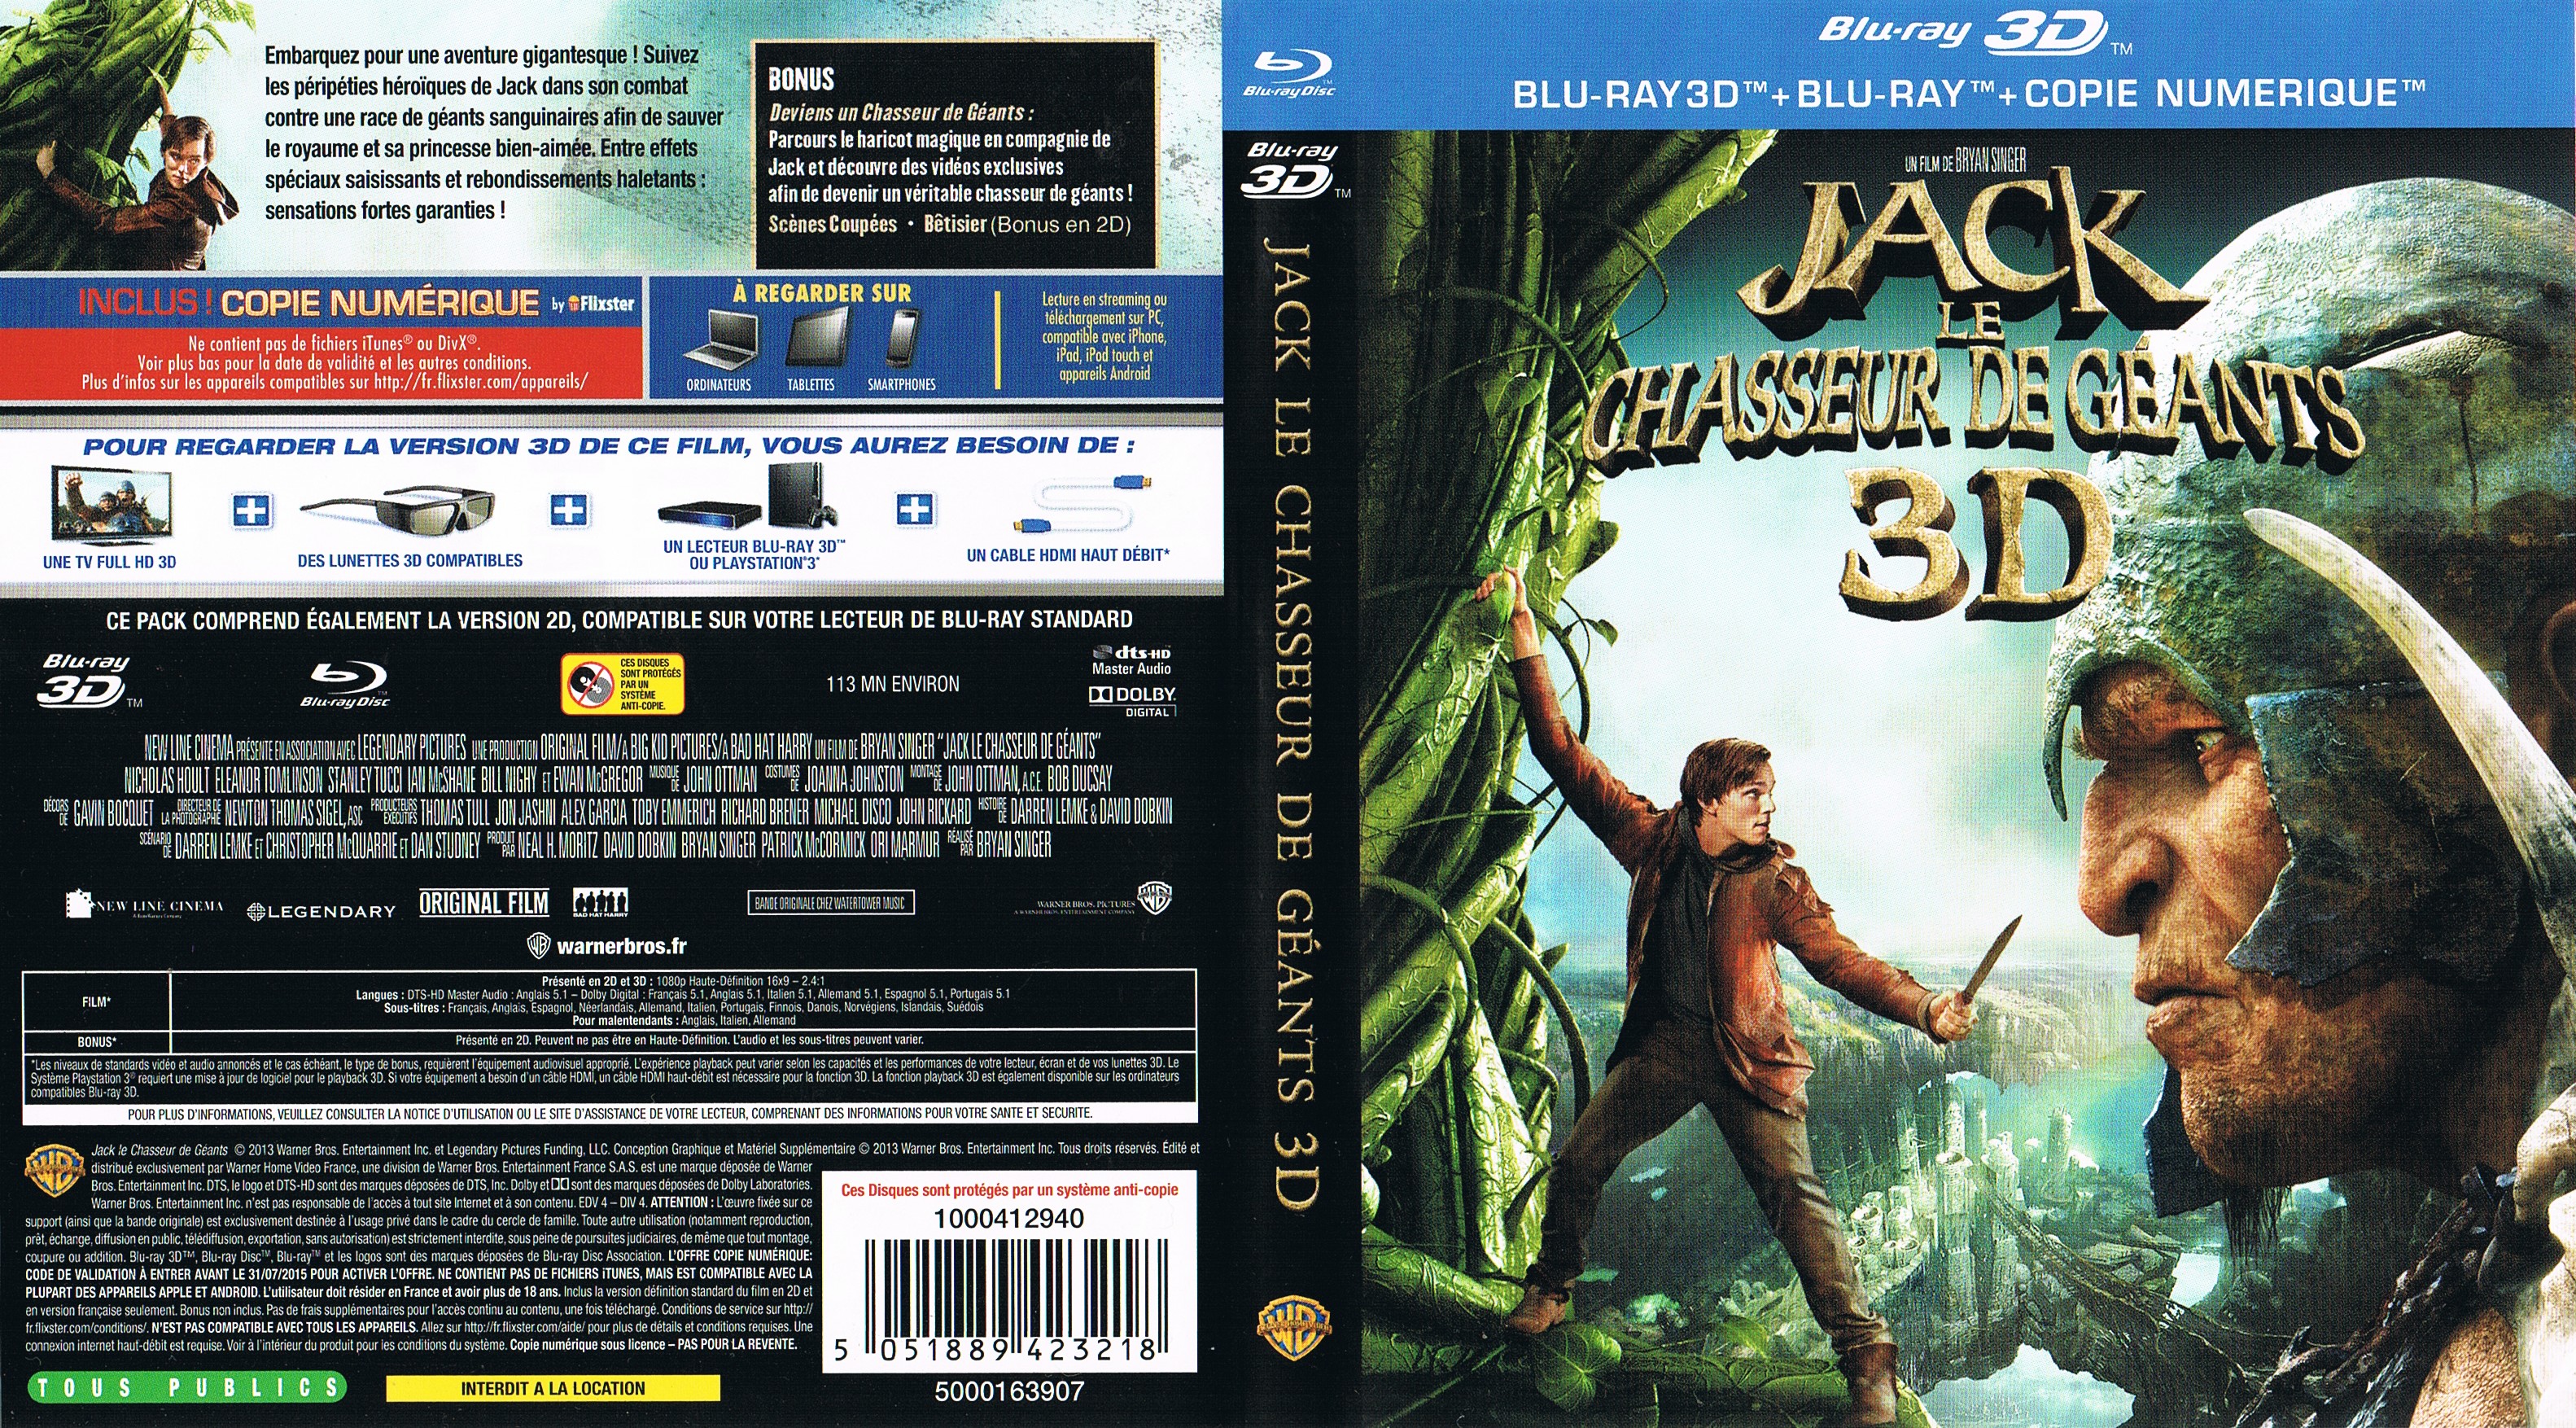 Jaquette DVD Jack le chasseur de gants 3D (BLU-RAY)